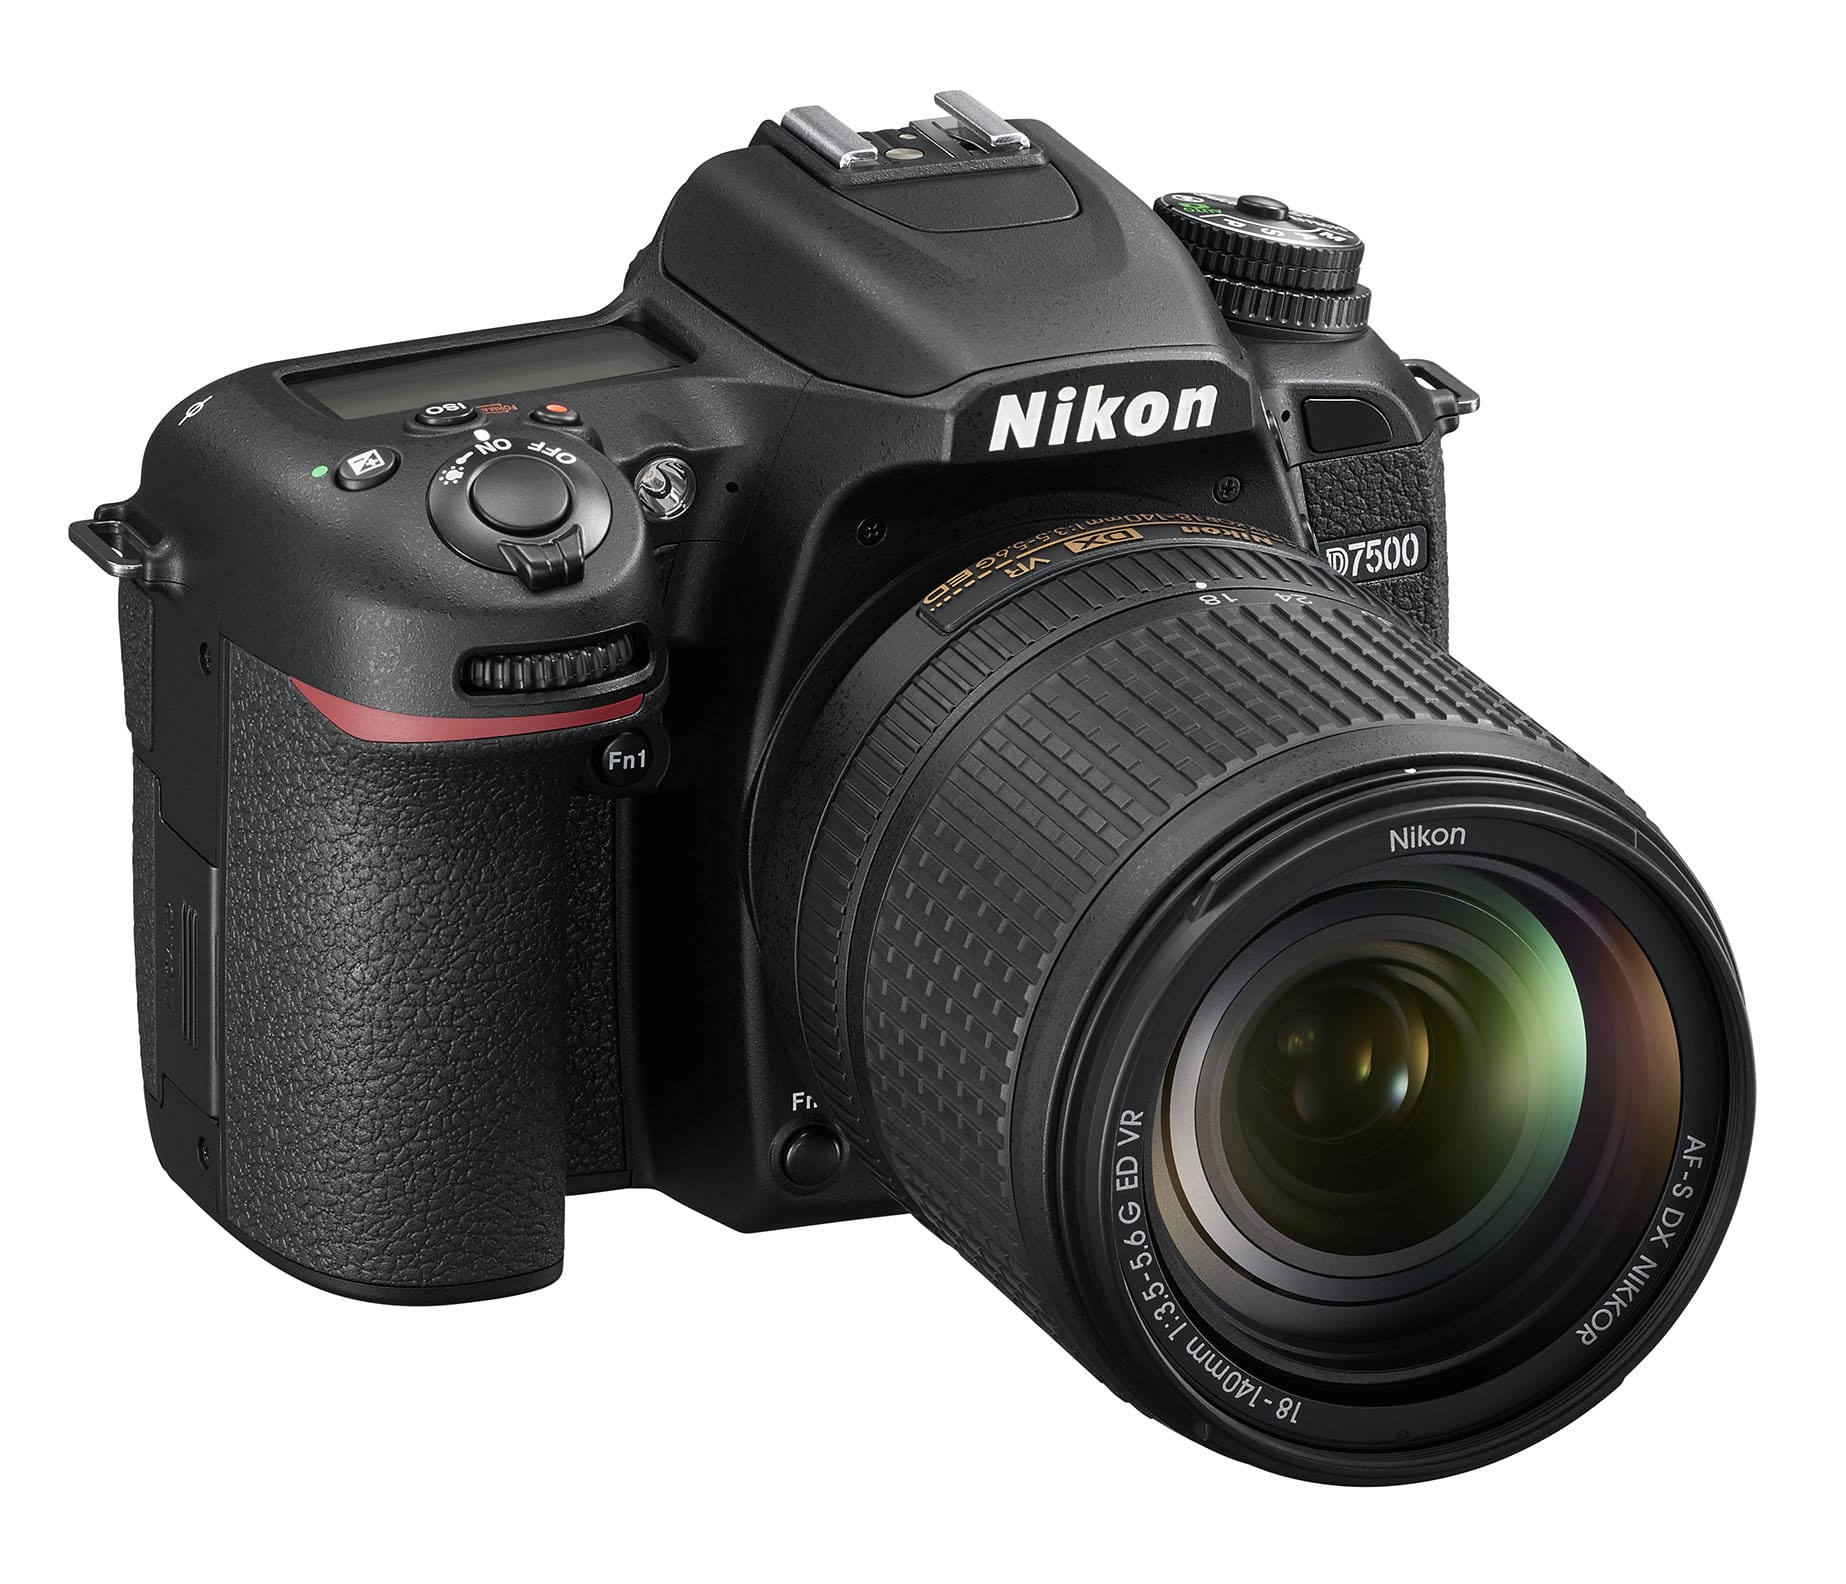 Nikon D7500 DSLR camera (Black)